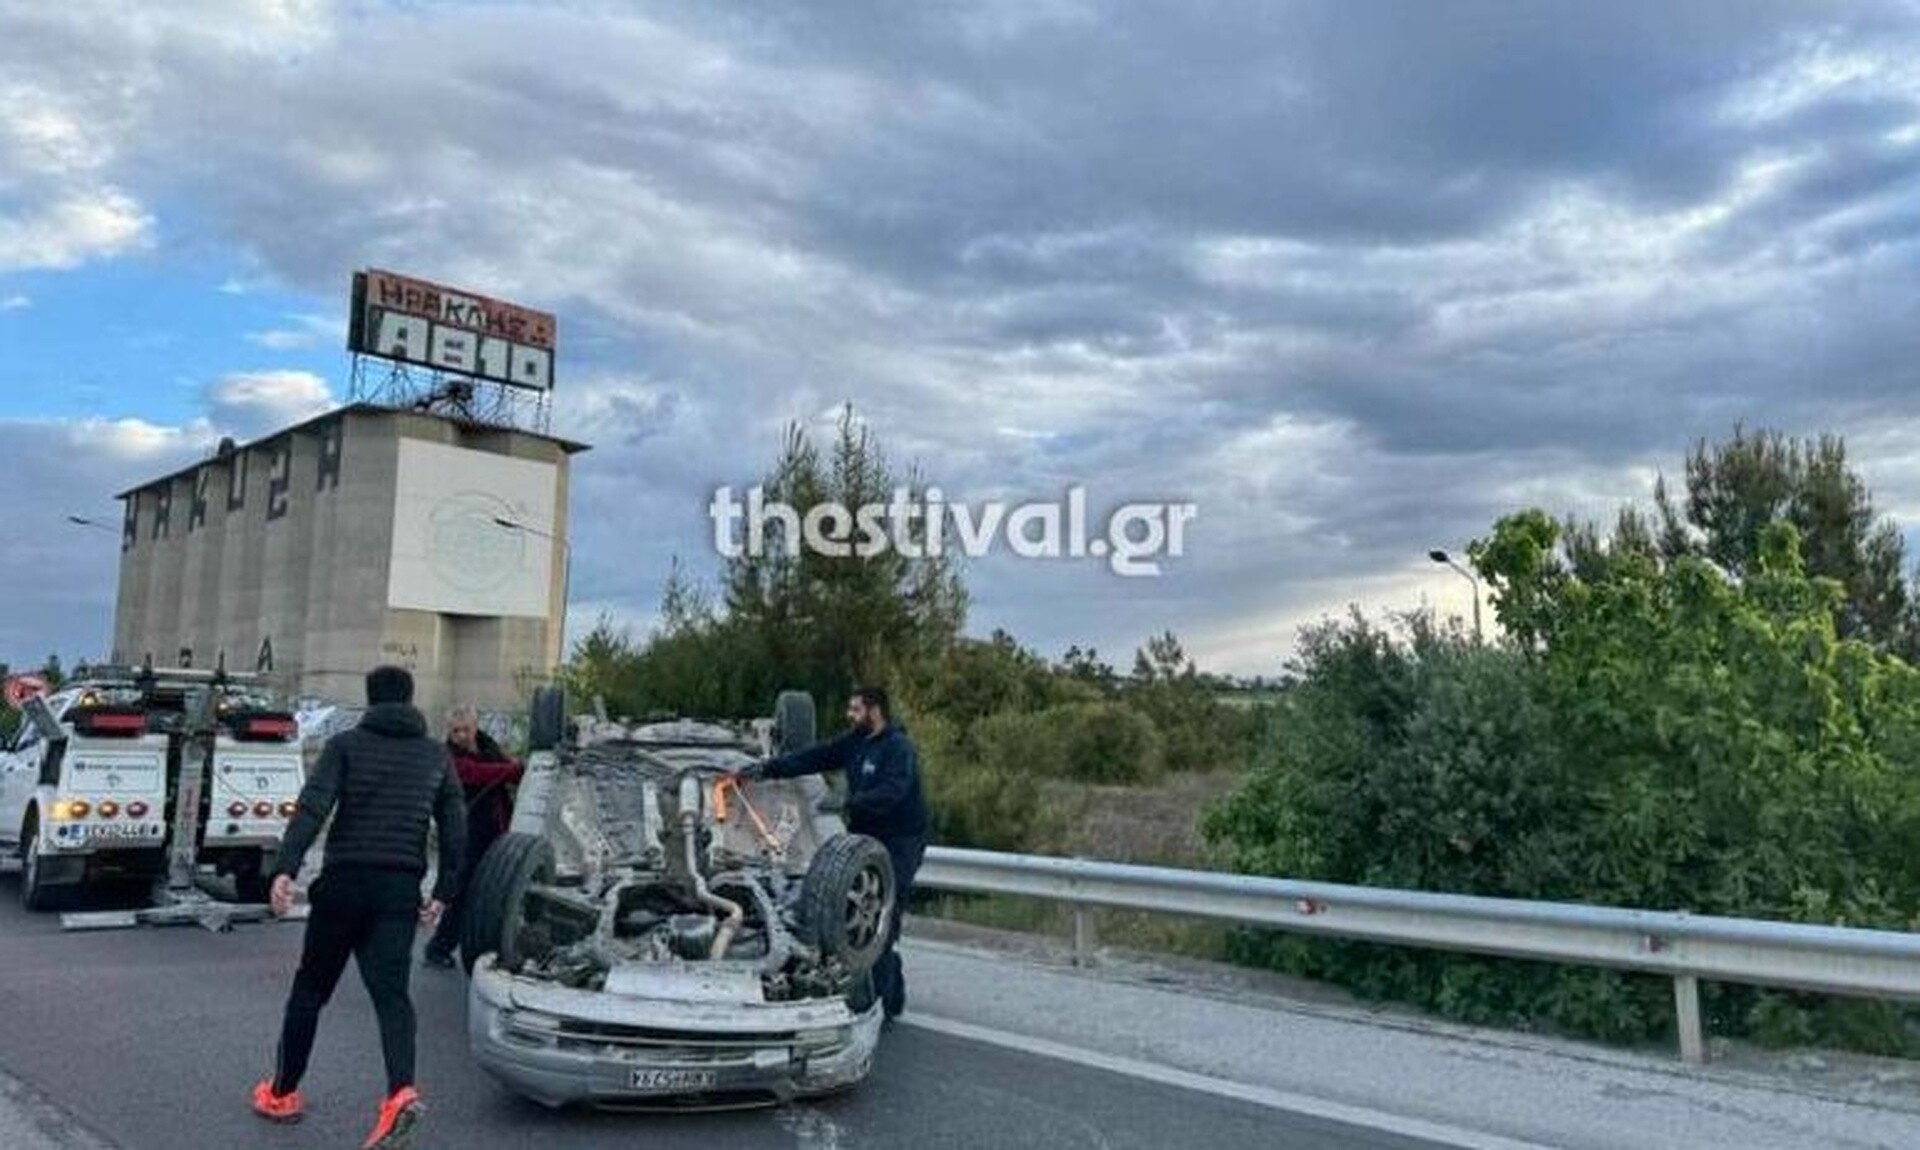 Θεσσαλονίκη: Αυτοκίνητο τούμπαρε στην Εθνική Οδό Θεσσαλονίκης – Νέων Μουδανιών